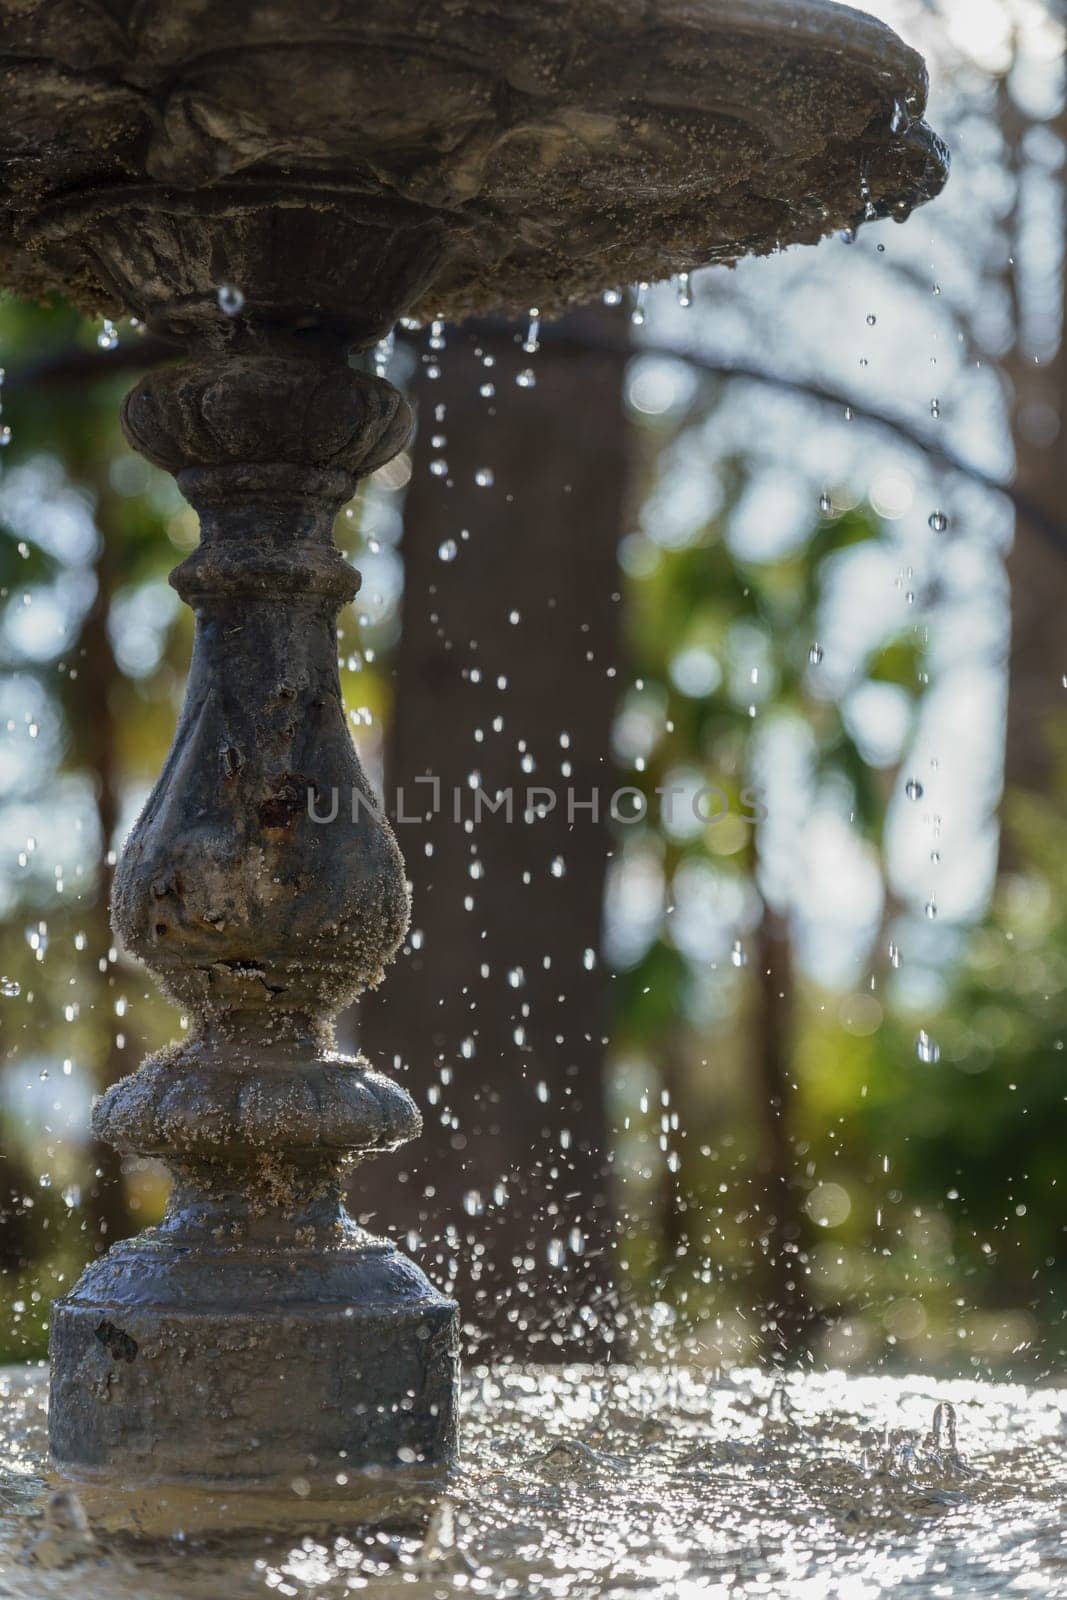 water from a public fountain splashing in the sunlight by joseantona